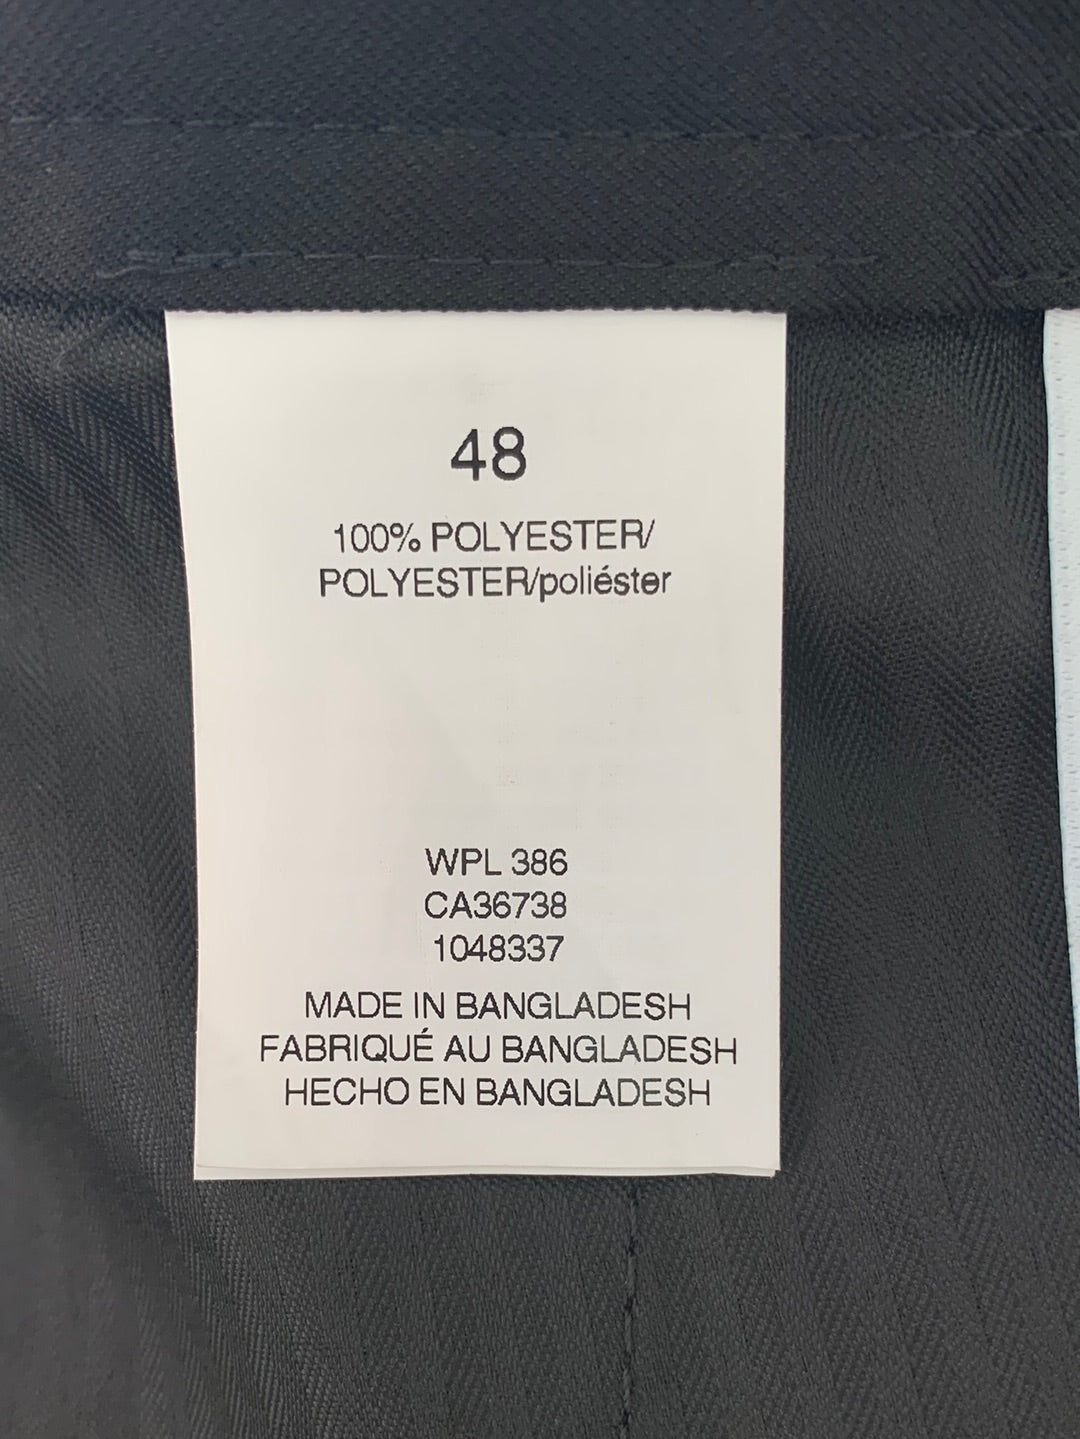 NWT - HAGGAR black Cool 18 Pro Pleated 10.5" Golf Shorts - 48W